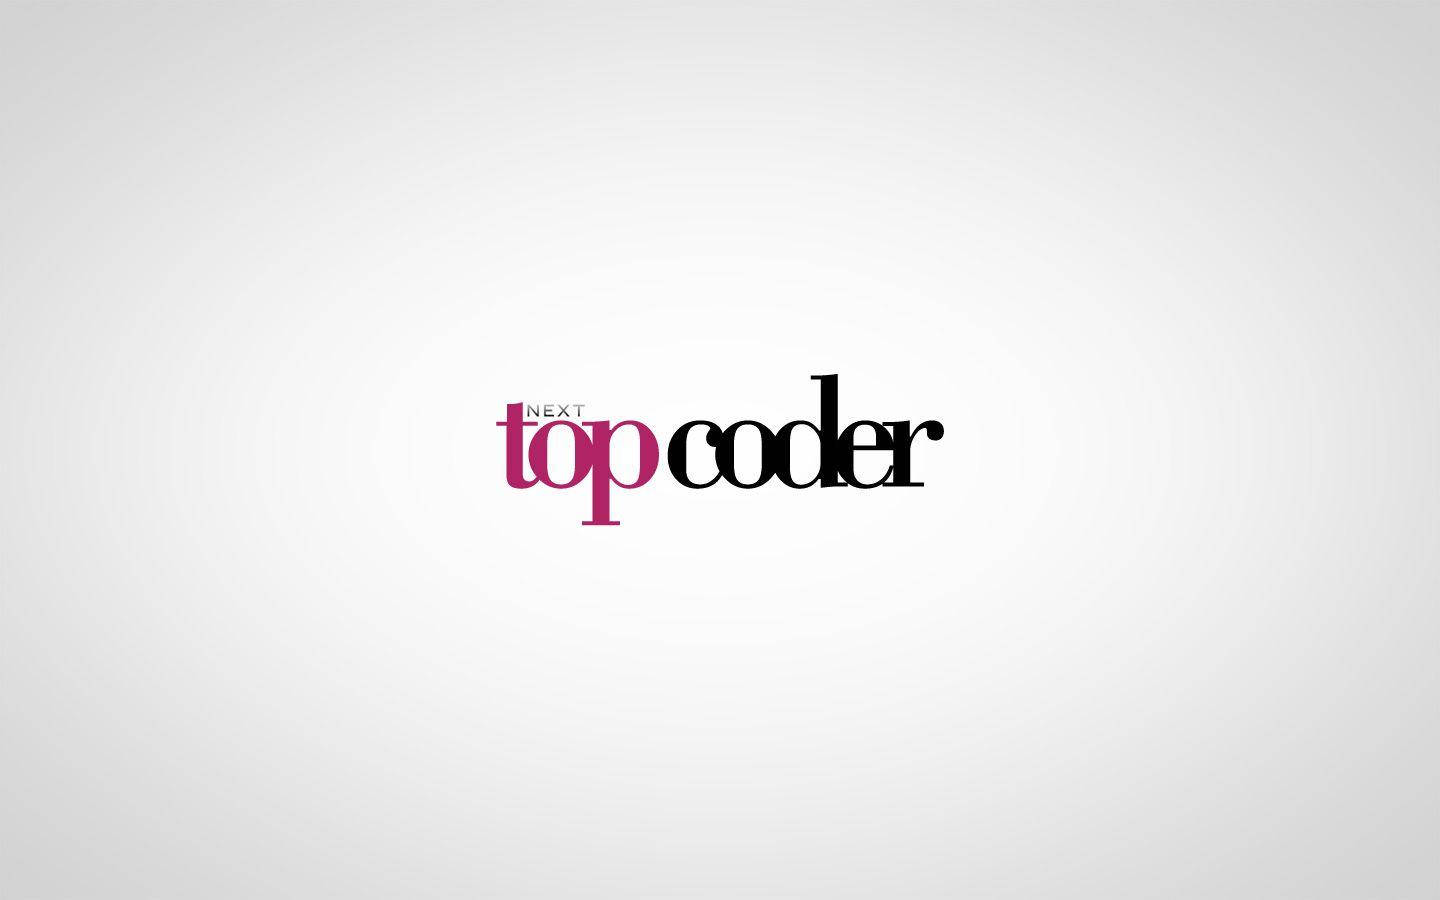 Next Top Coder Background